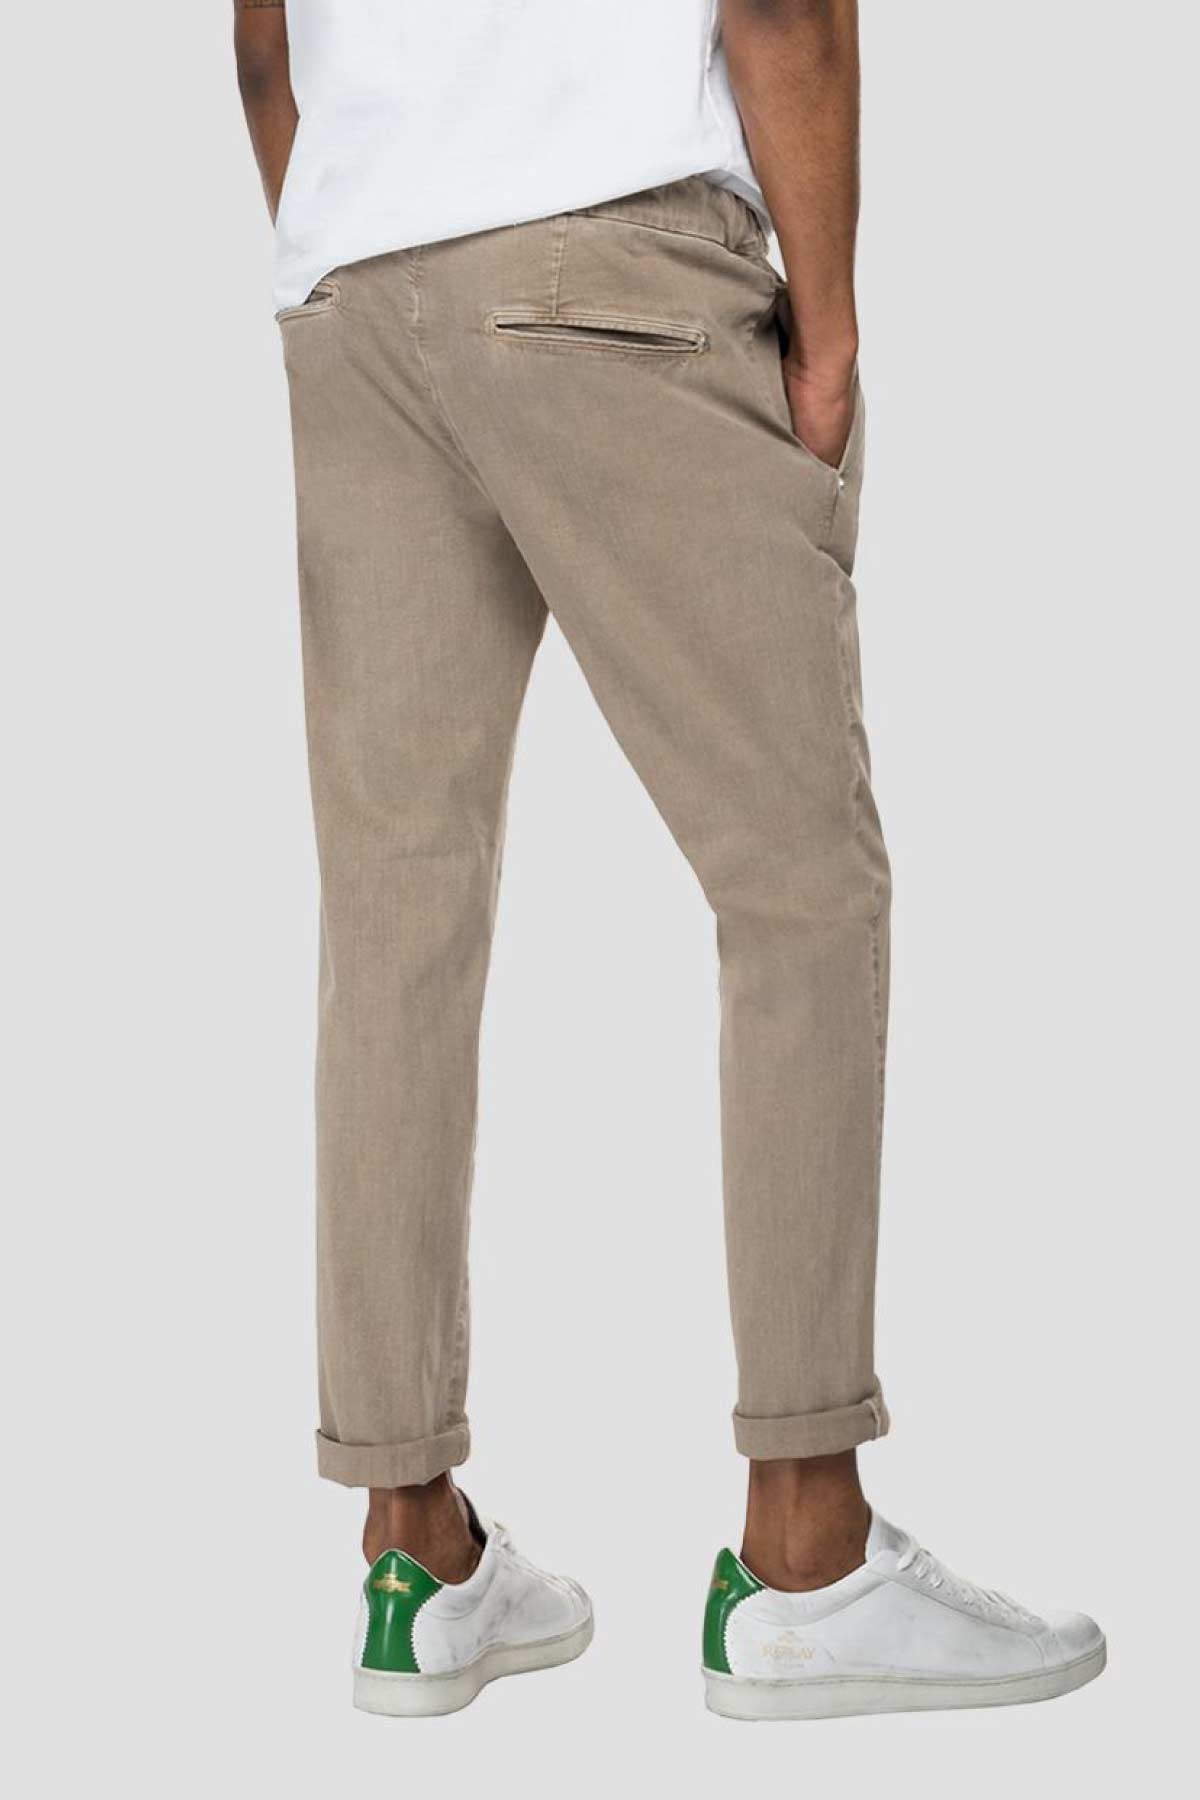 Replay Devyn Slim Fit X-Lite Ultra Light Streç Pantolon-Libas Trendy Fashion Store